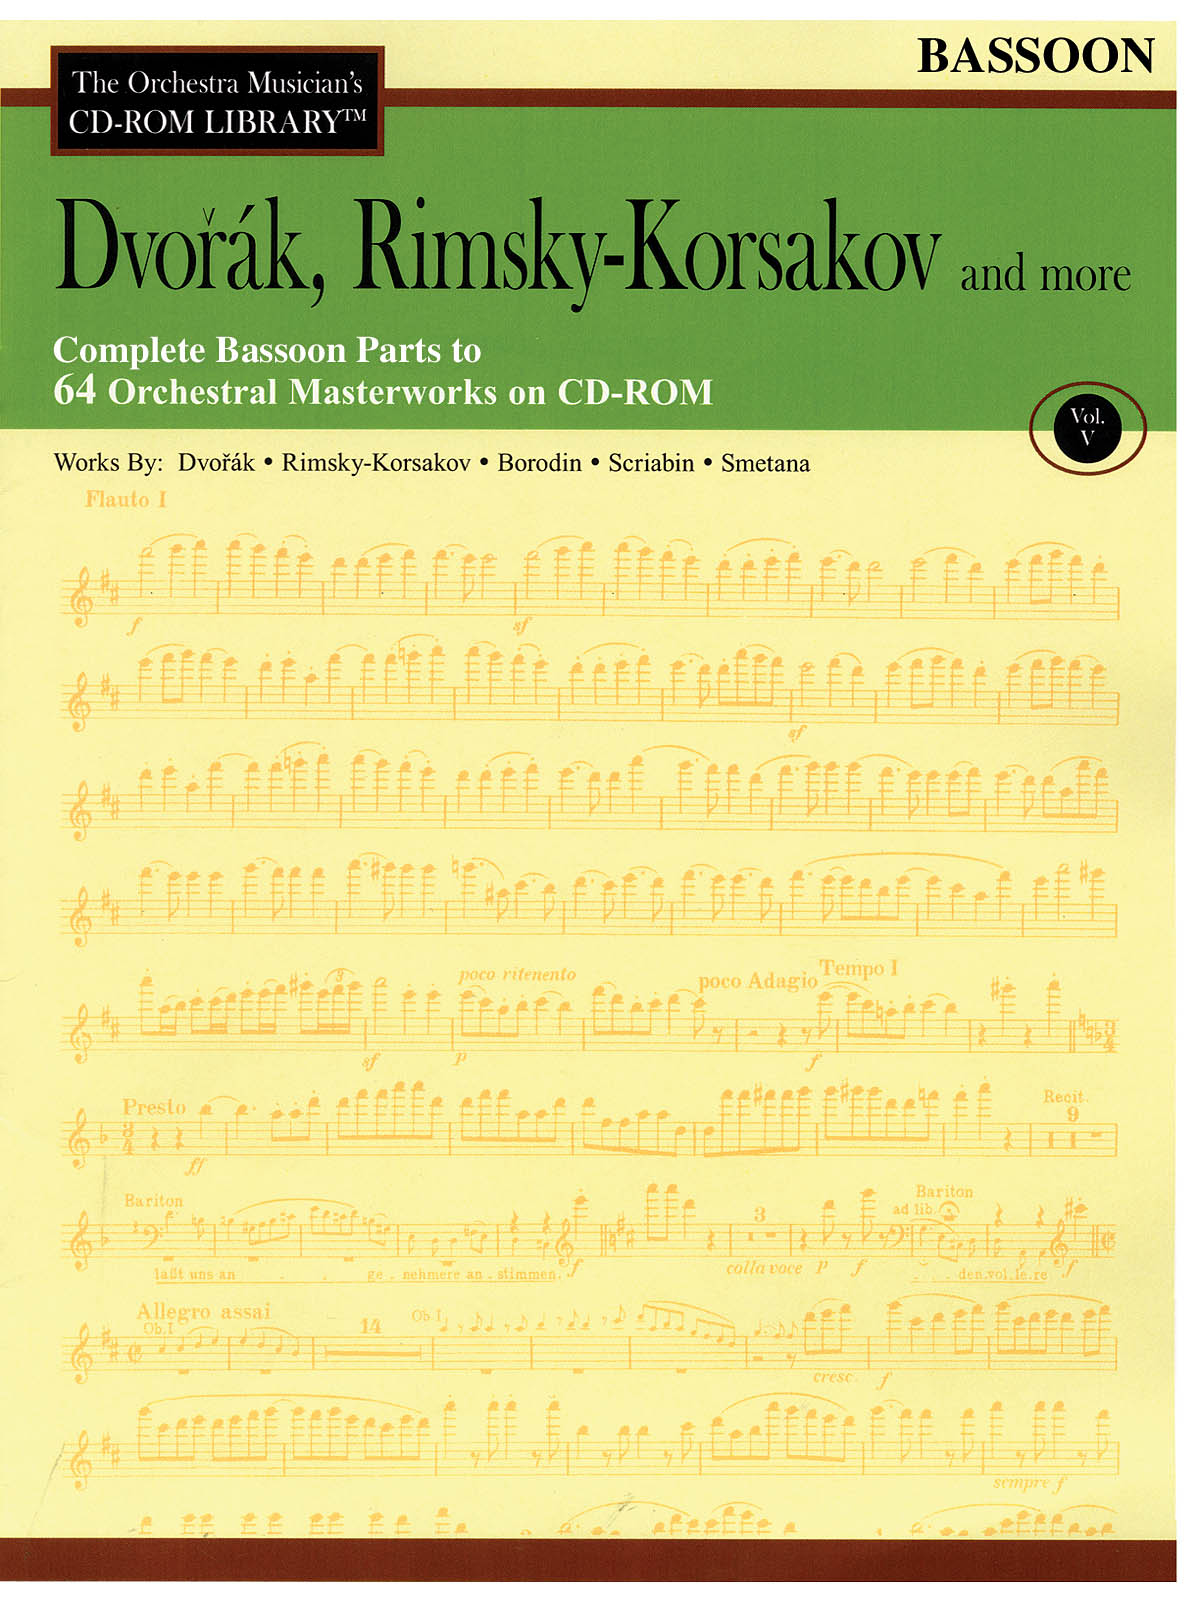 Dvorak, Rimsky-Korsakov and More - Volume 5(The Orchestra Musician's CD-ROM Library - Bassoon)